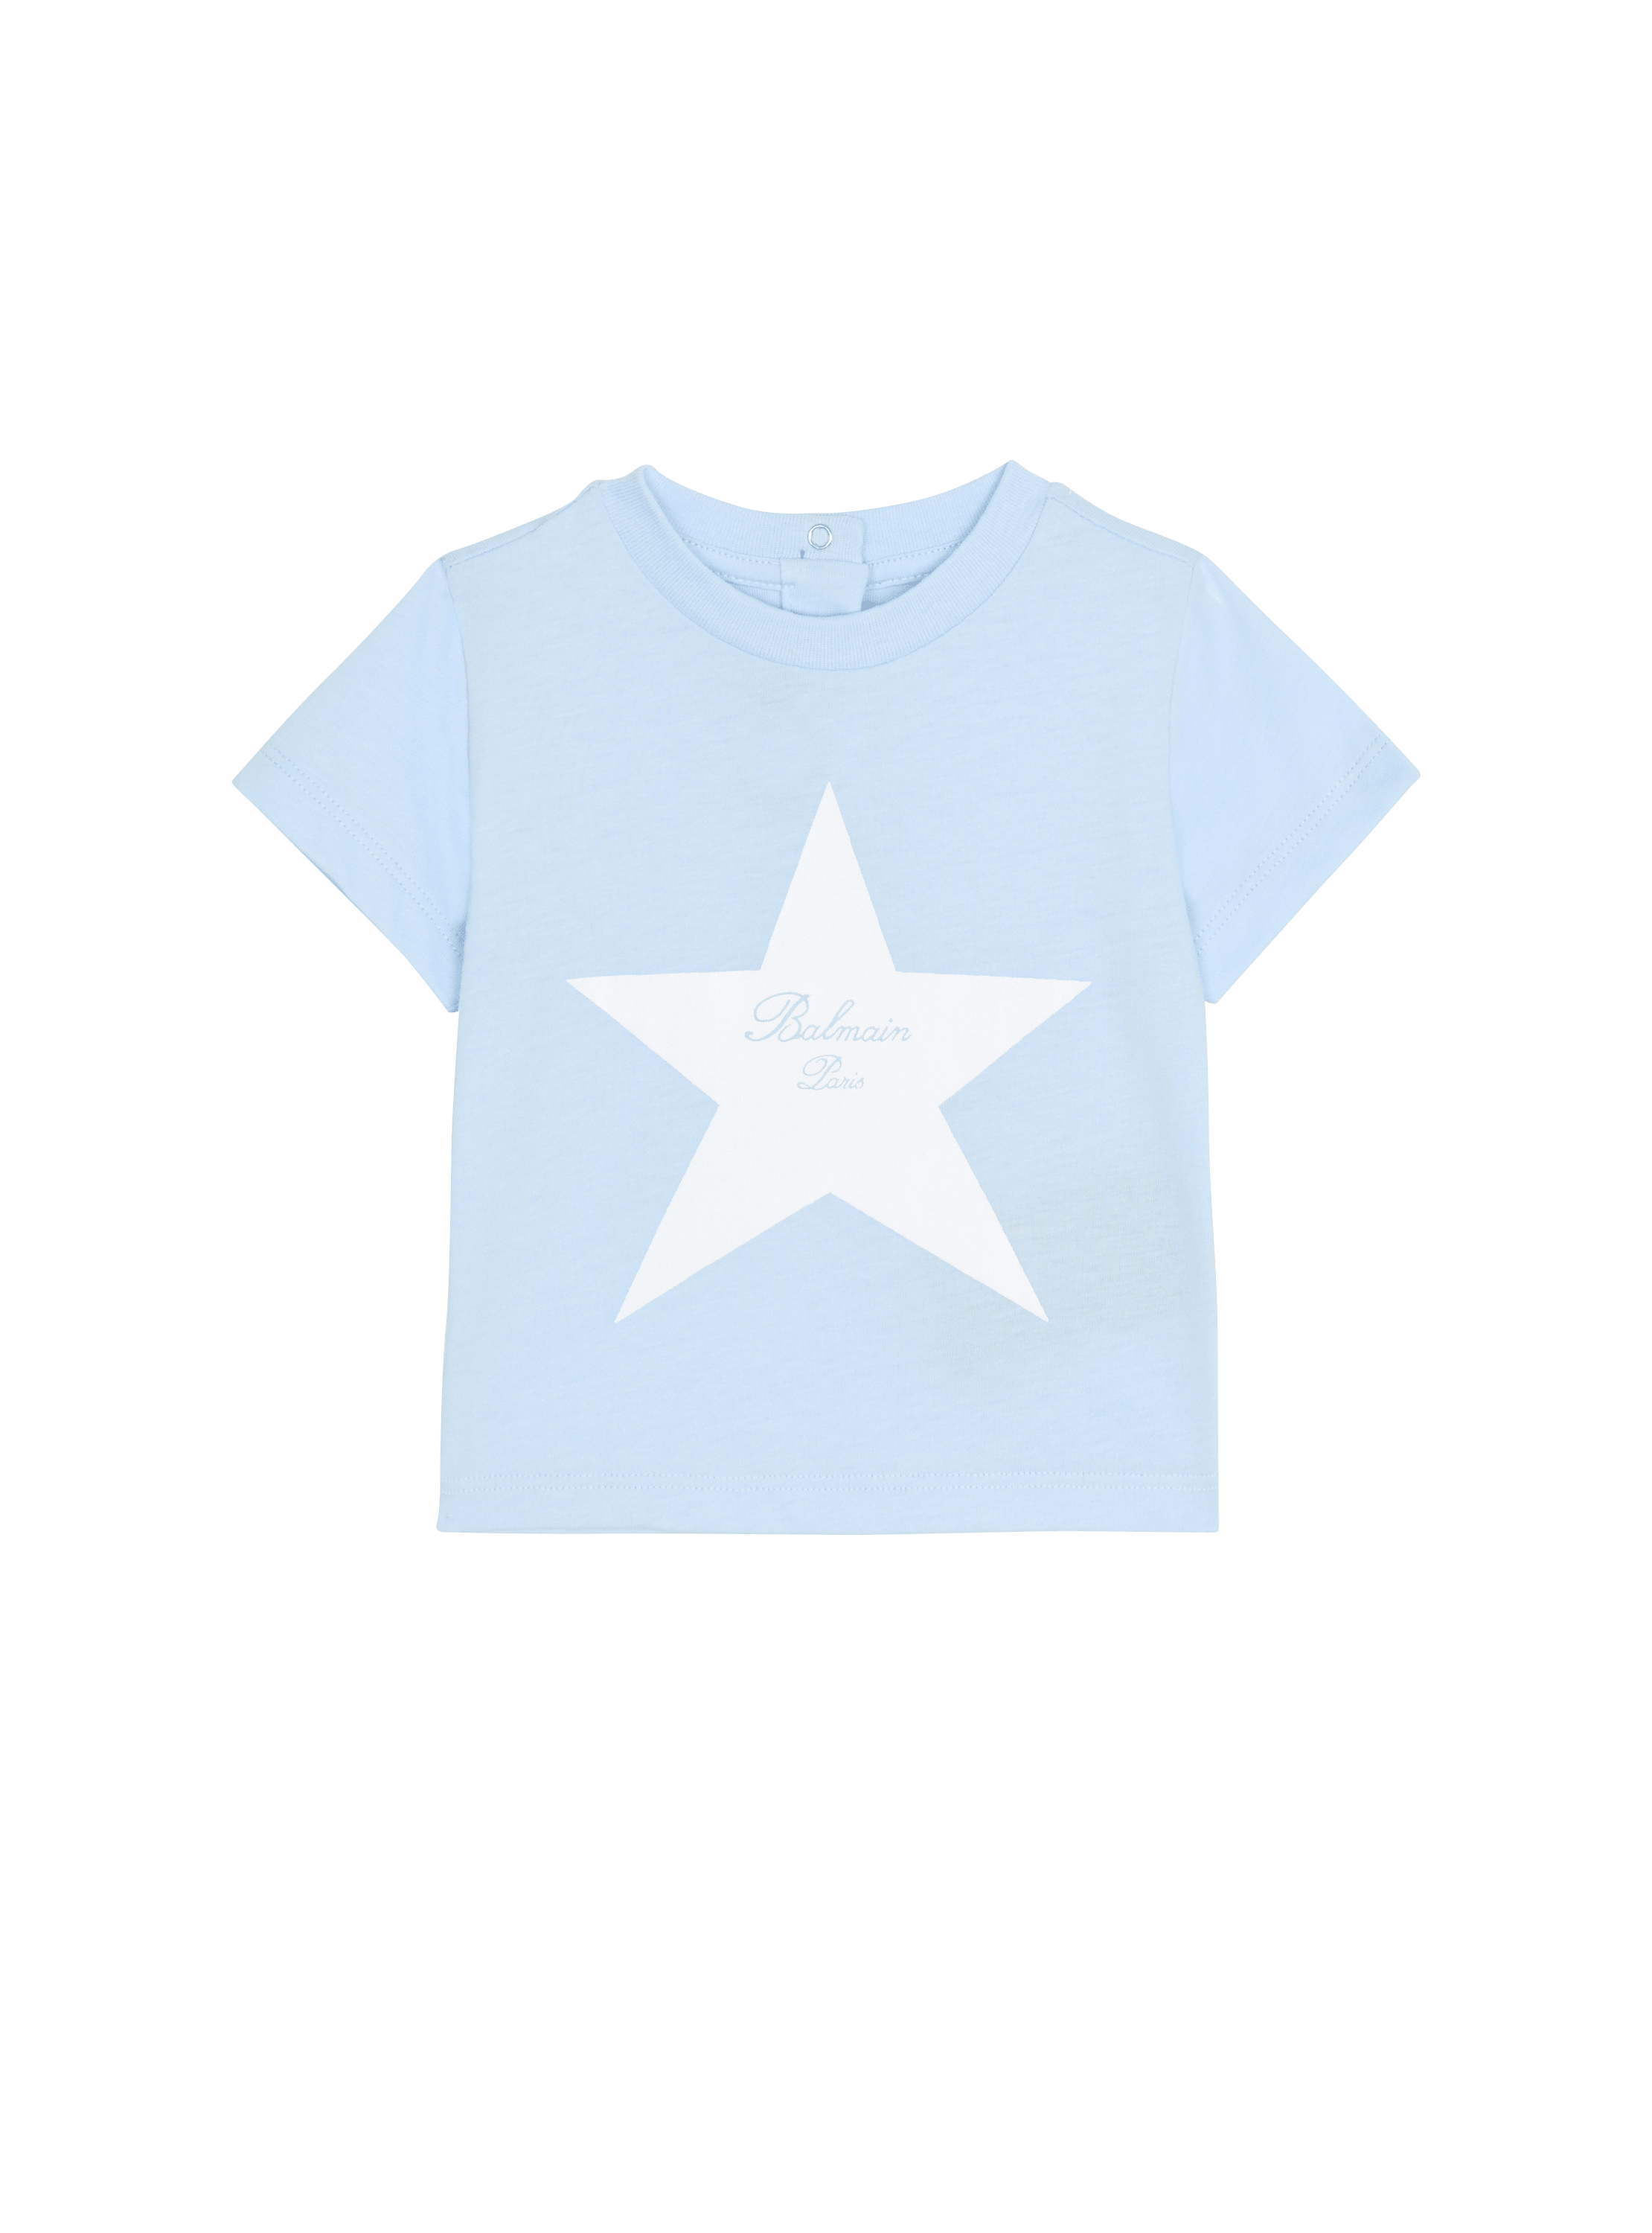 발망 스타 시그니처 티셔츠